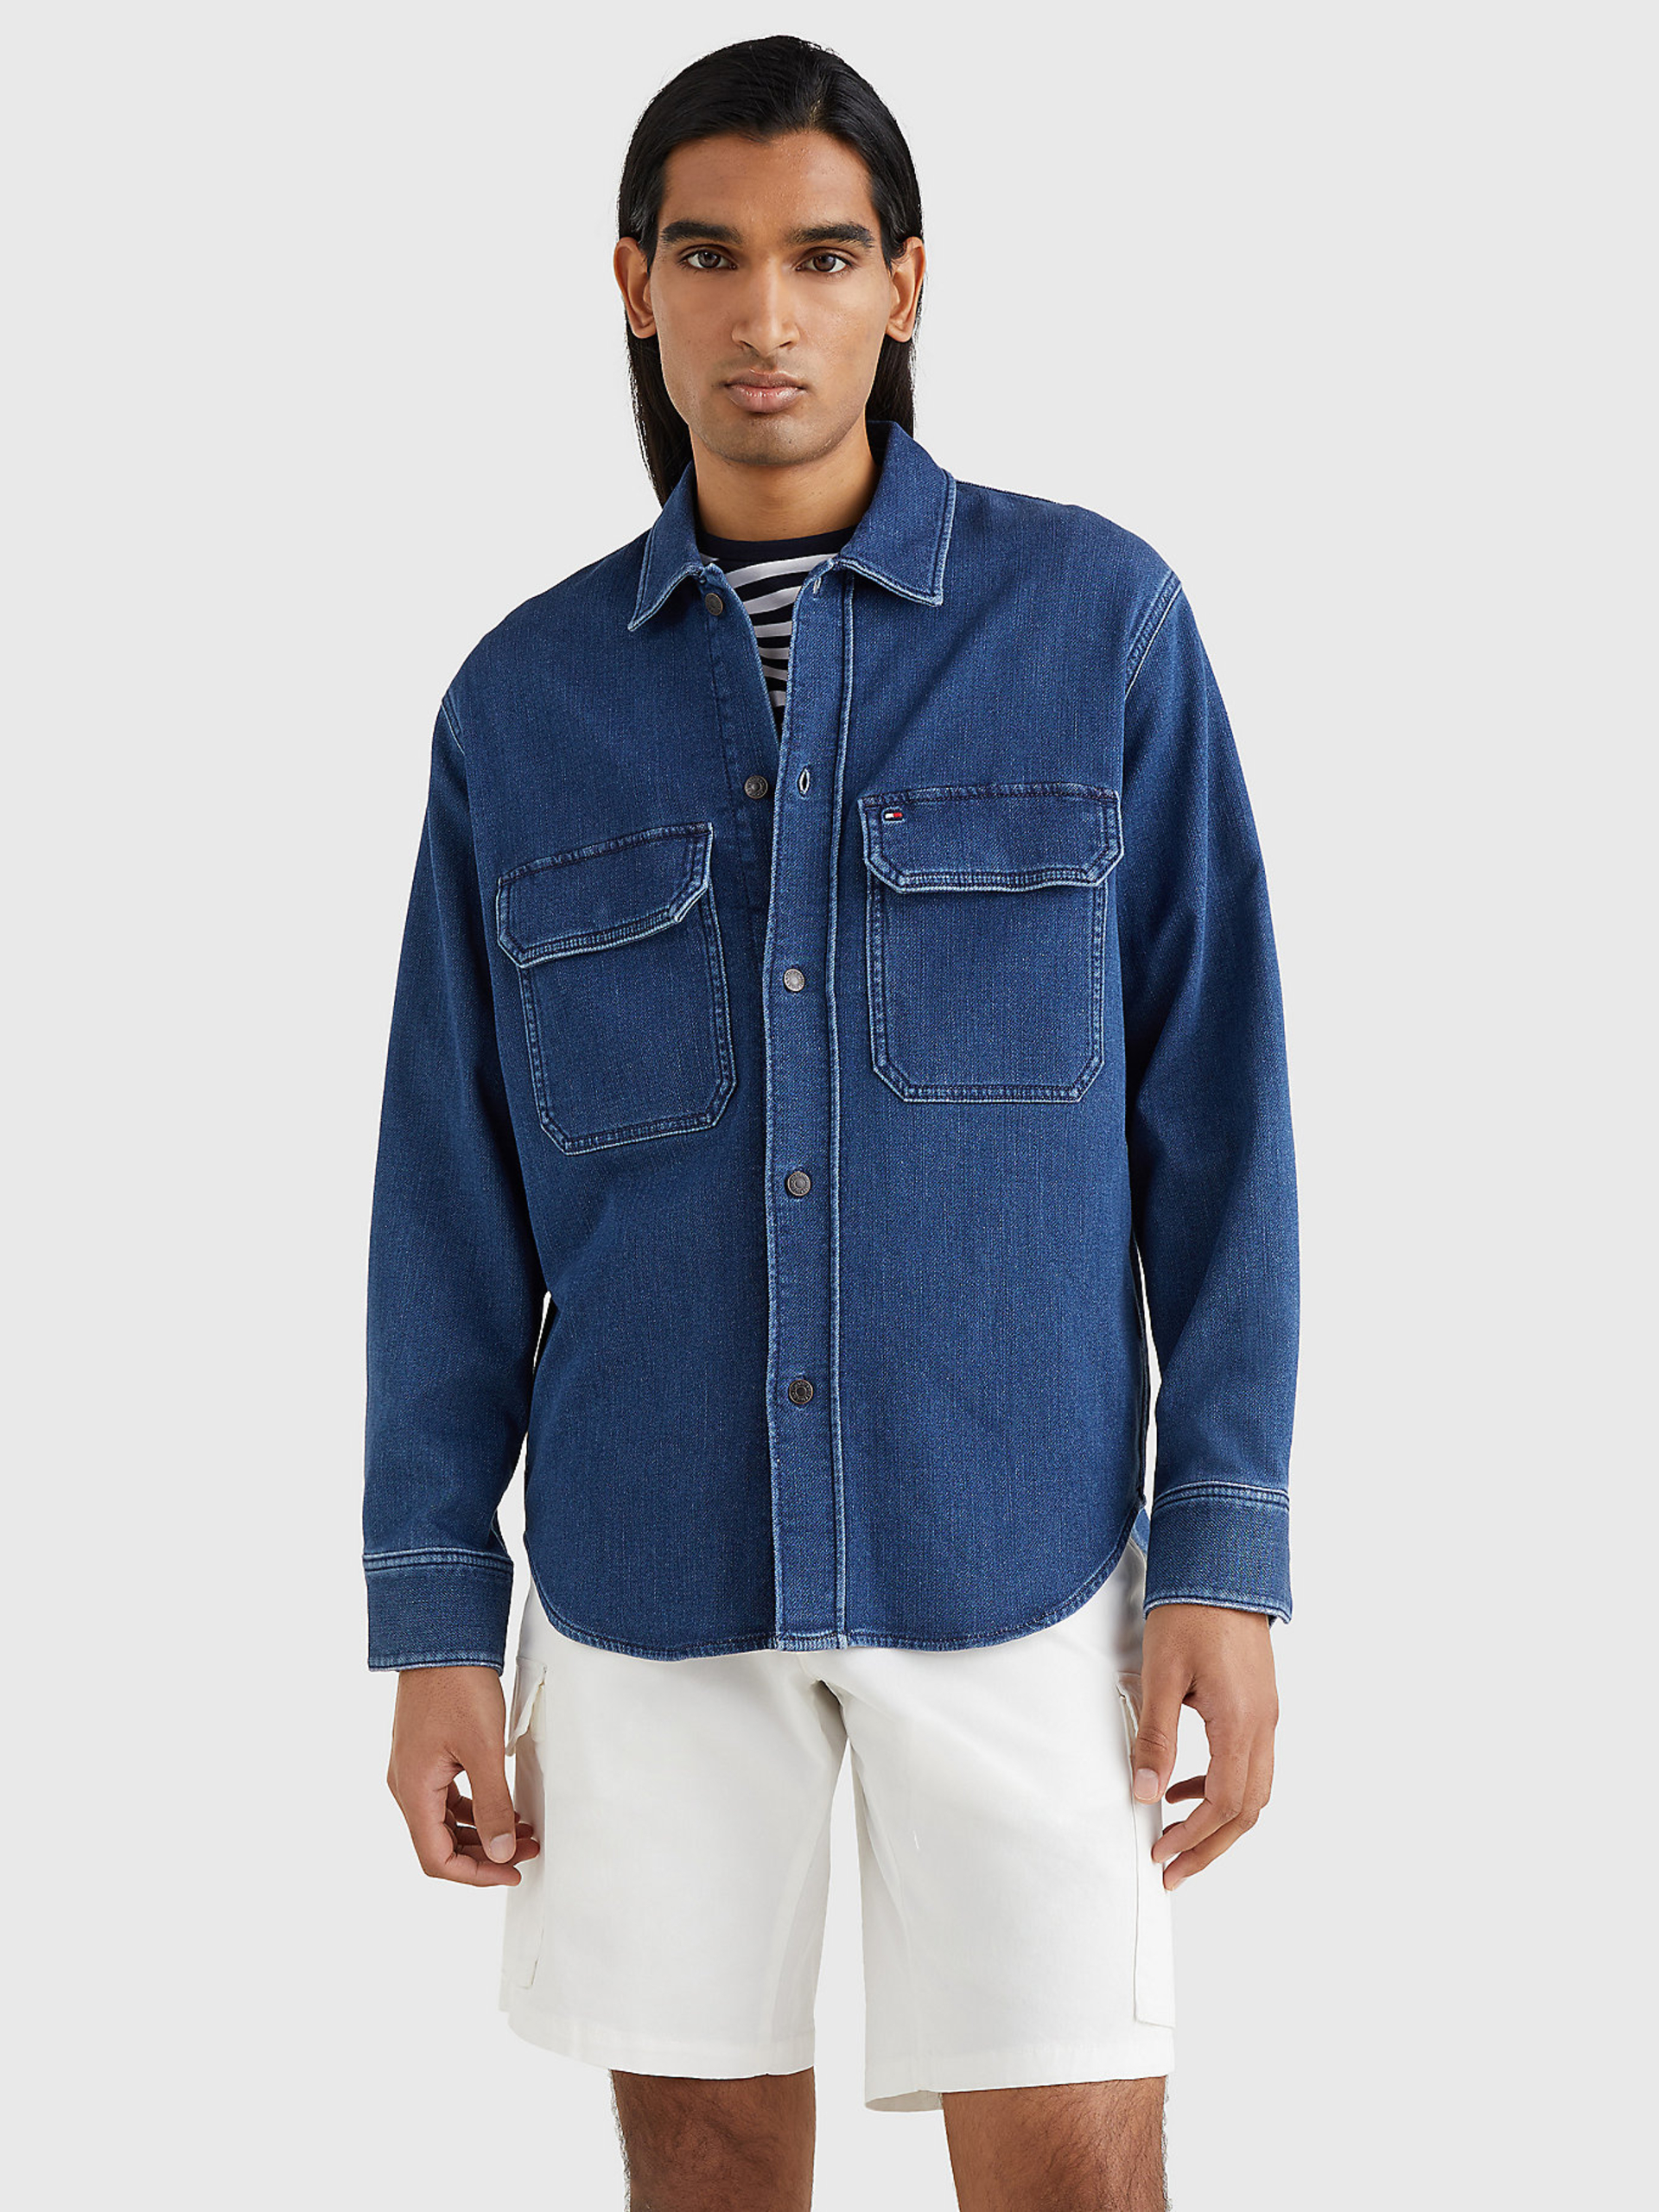 Tommy Hilfiger pánská modrá džínová košile - XXL (1BF)